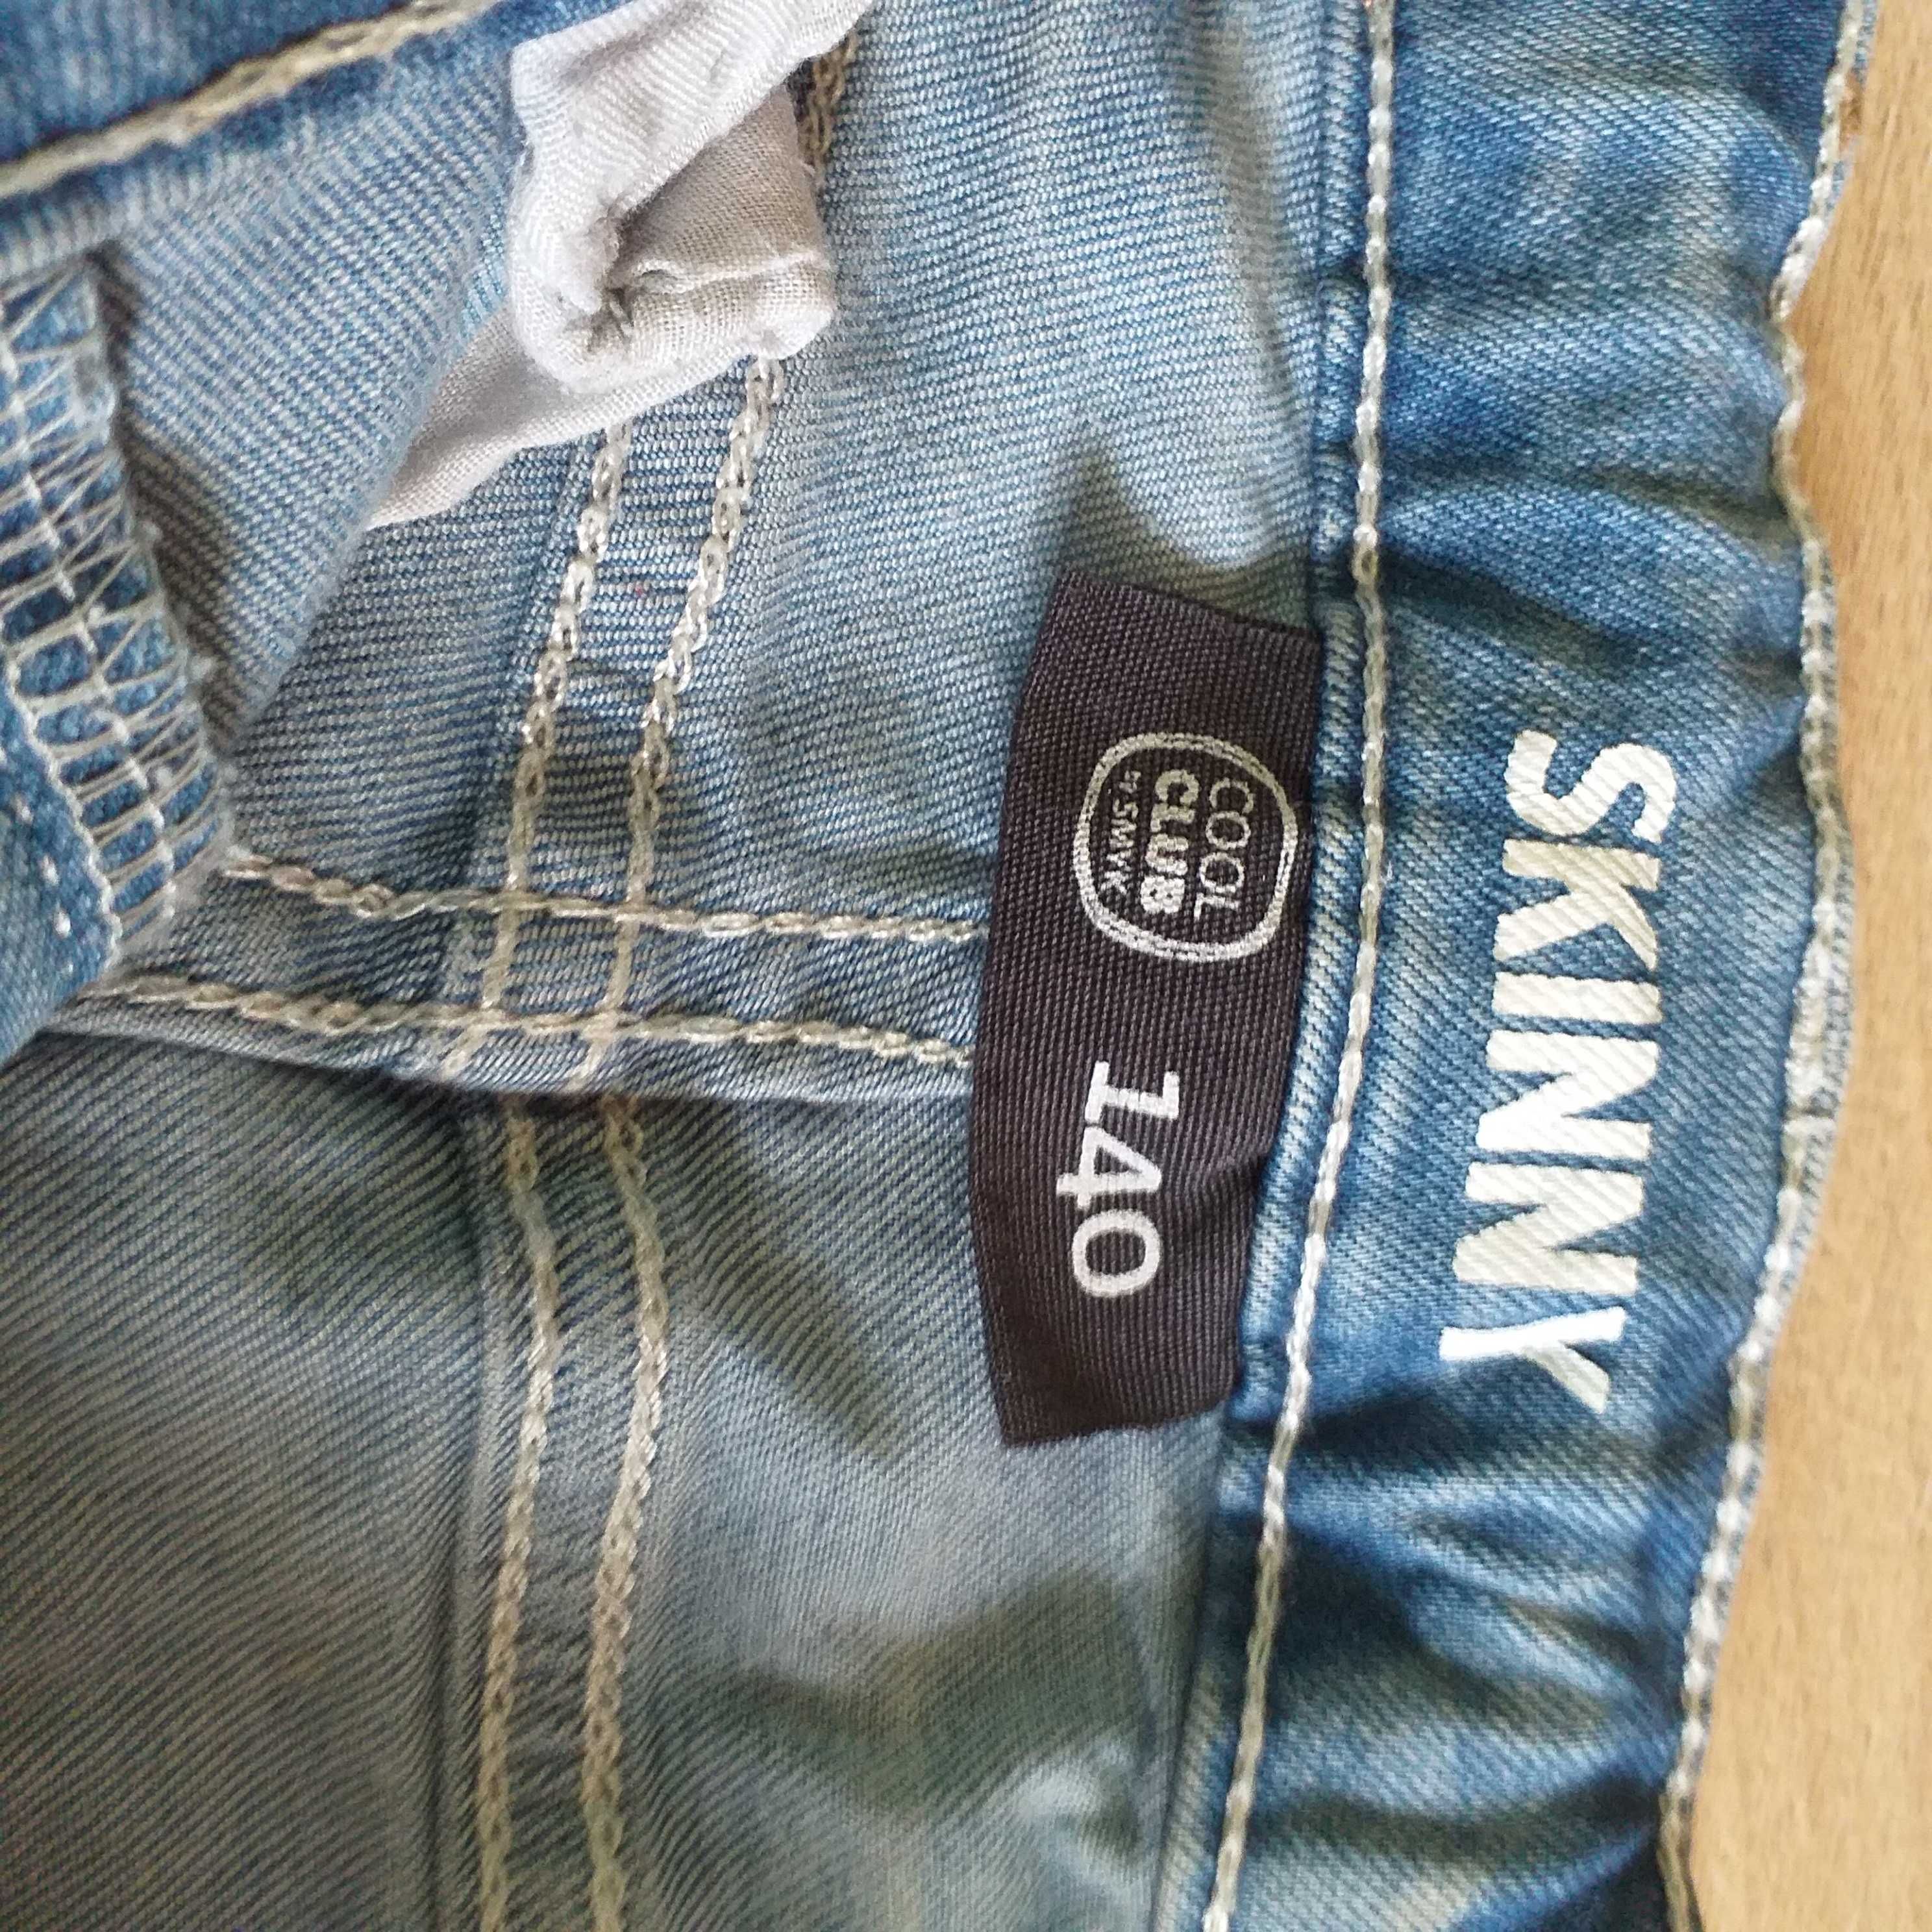 Spodnie dziewczęce jeans zdzierane od kupna- 140cm, Smyk, Rypin